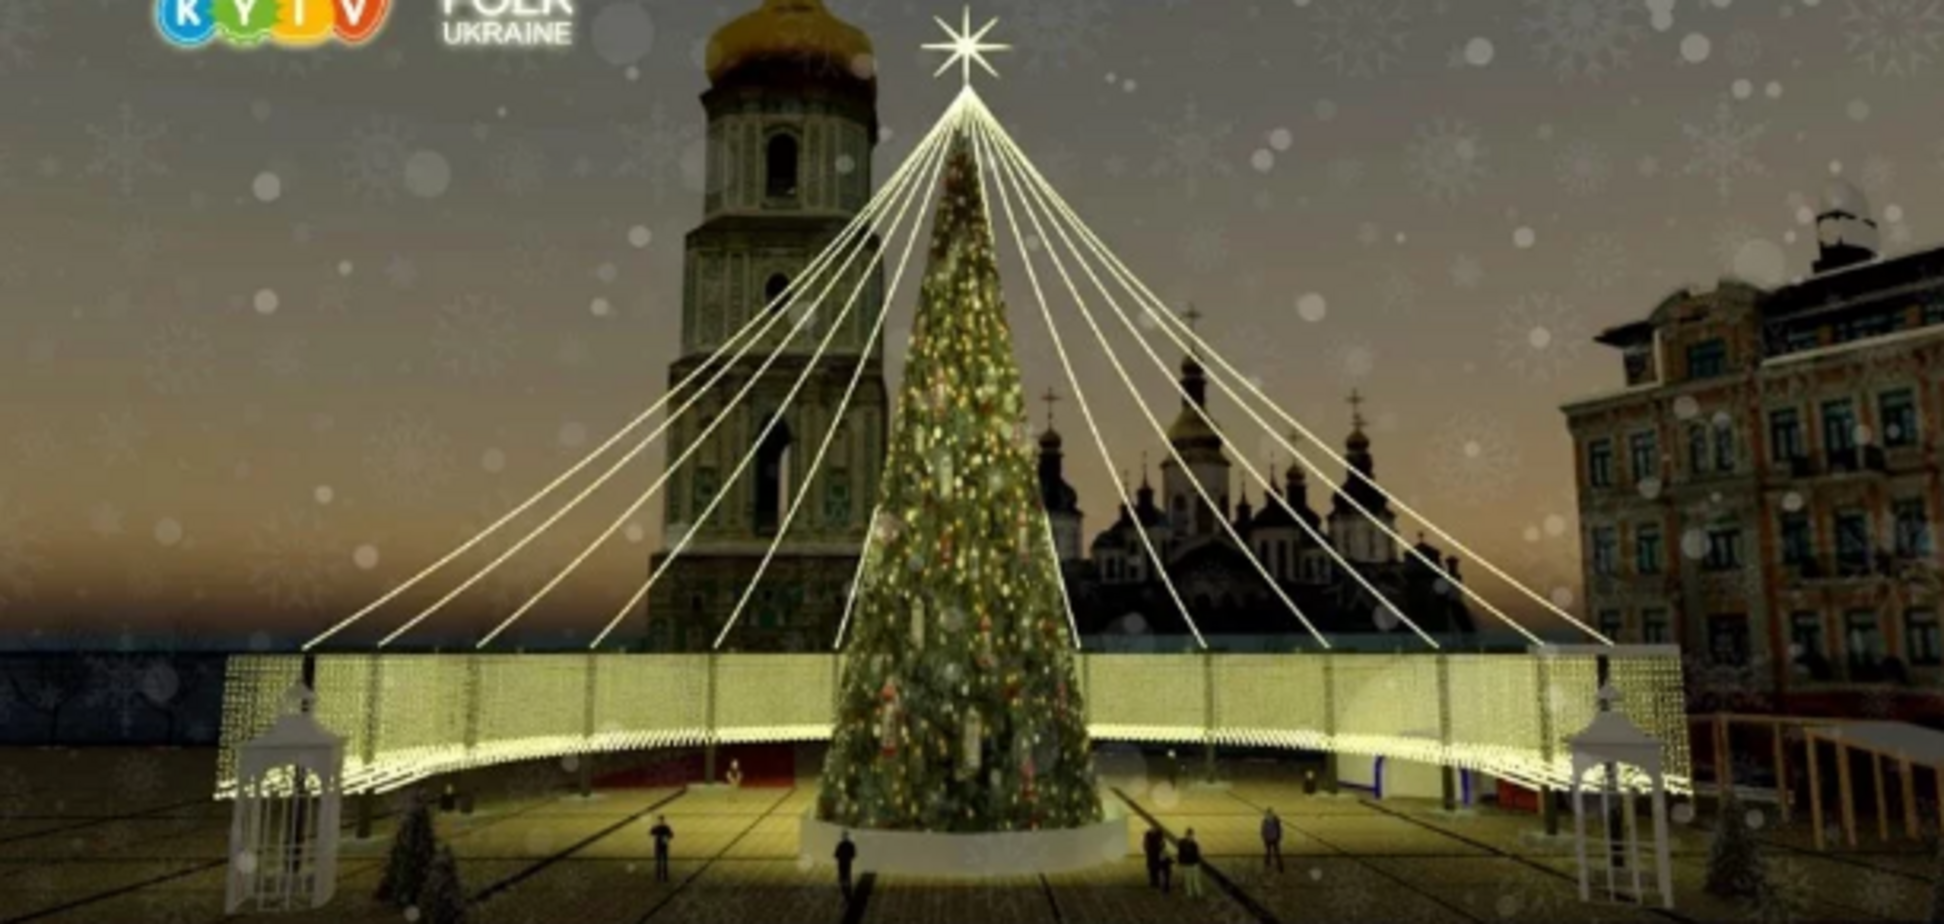 Огромные фонари и километры гирлянд: как будет выглядеть главная елка Украины